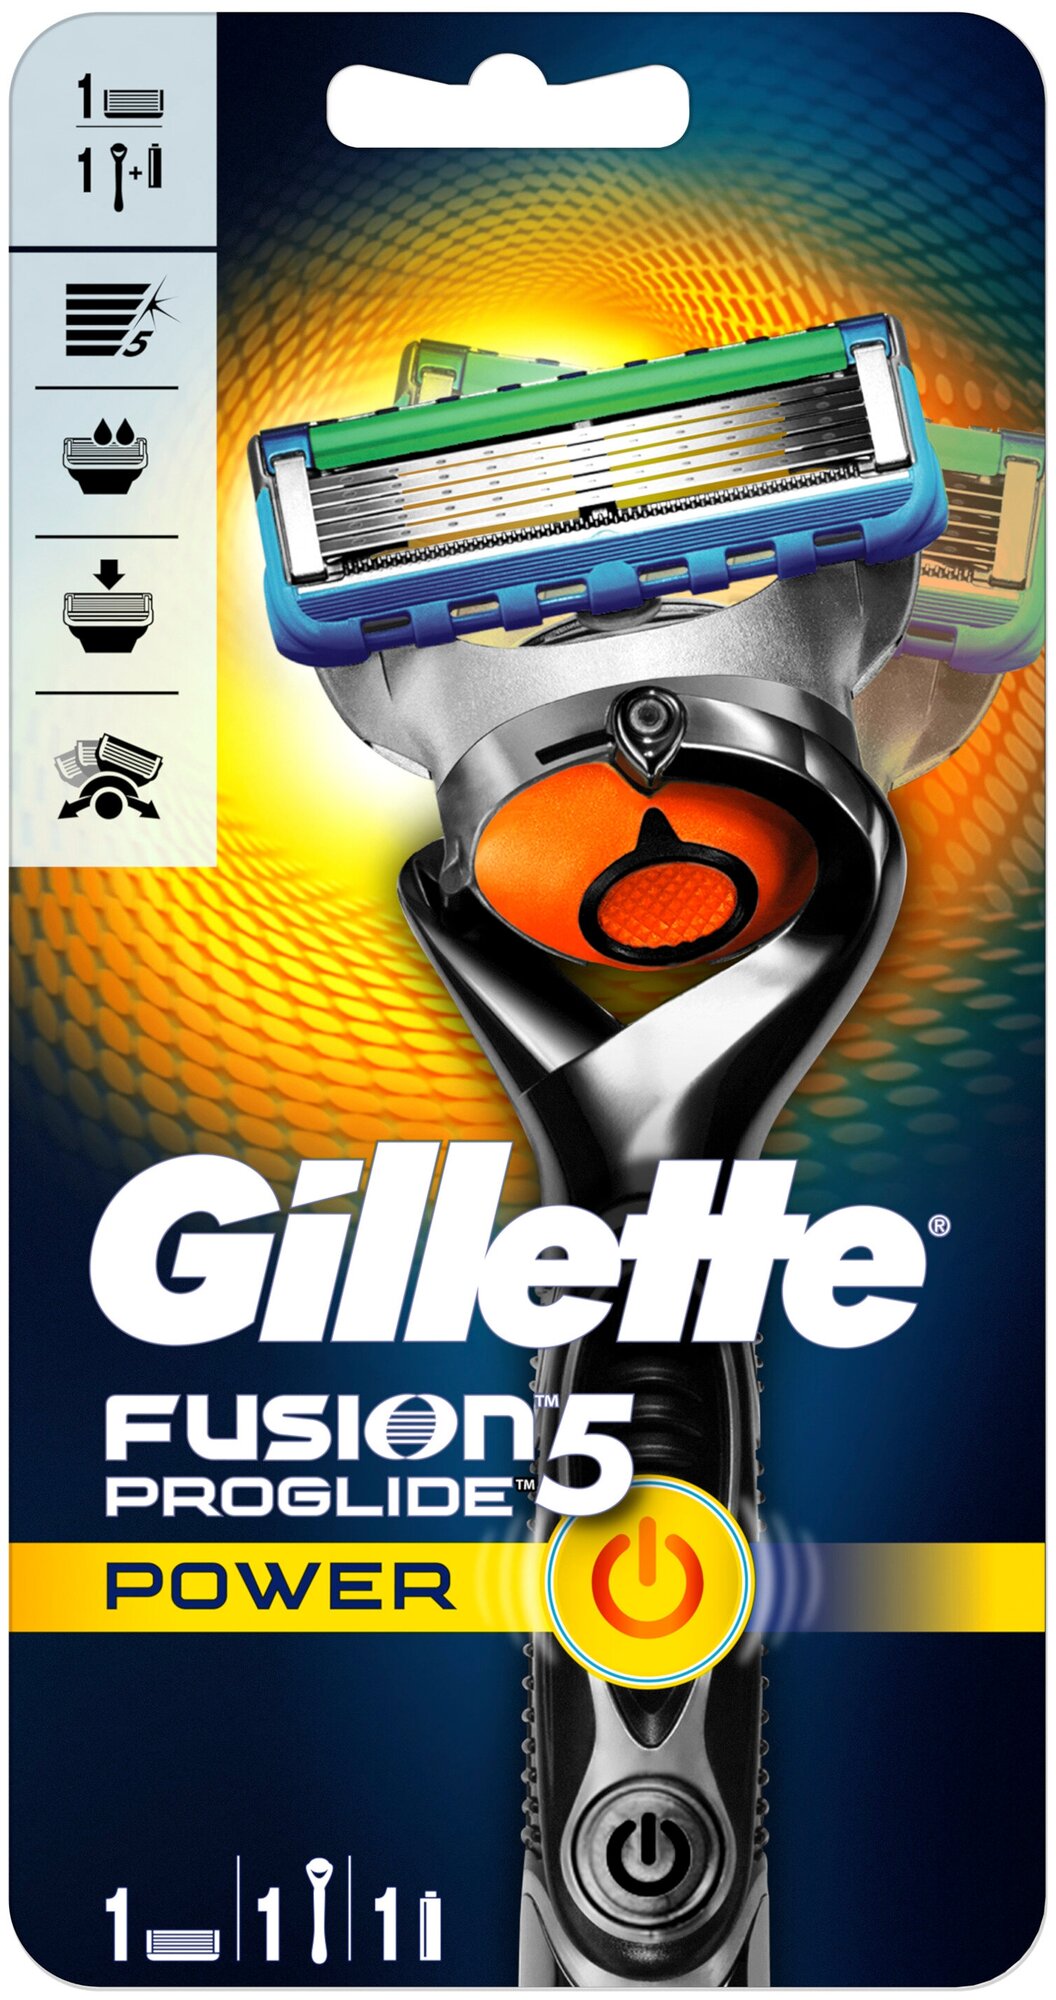 Многоразовый бритвенный станок Gillette Fusion5 ProGlide Power, черный, 1 шт.